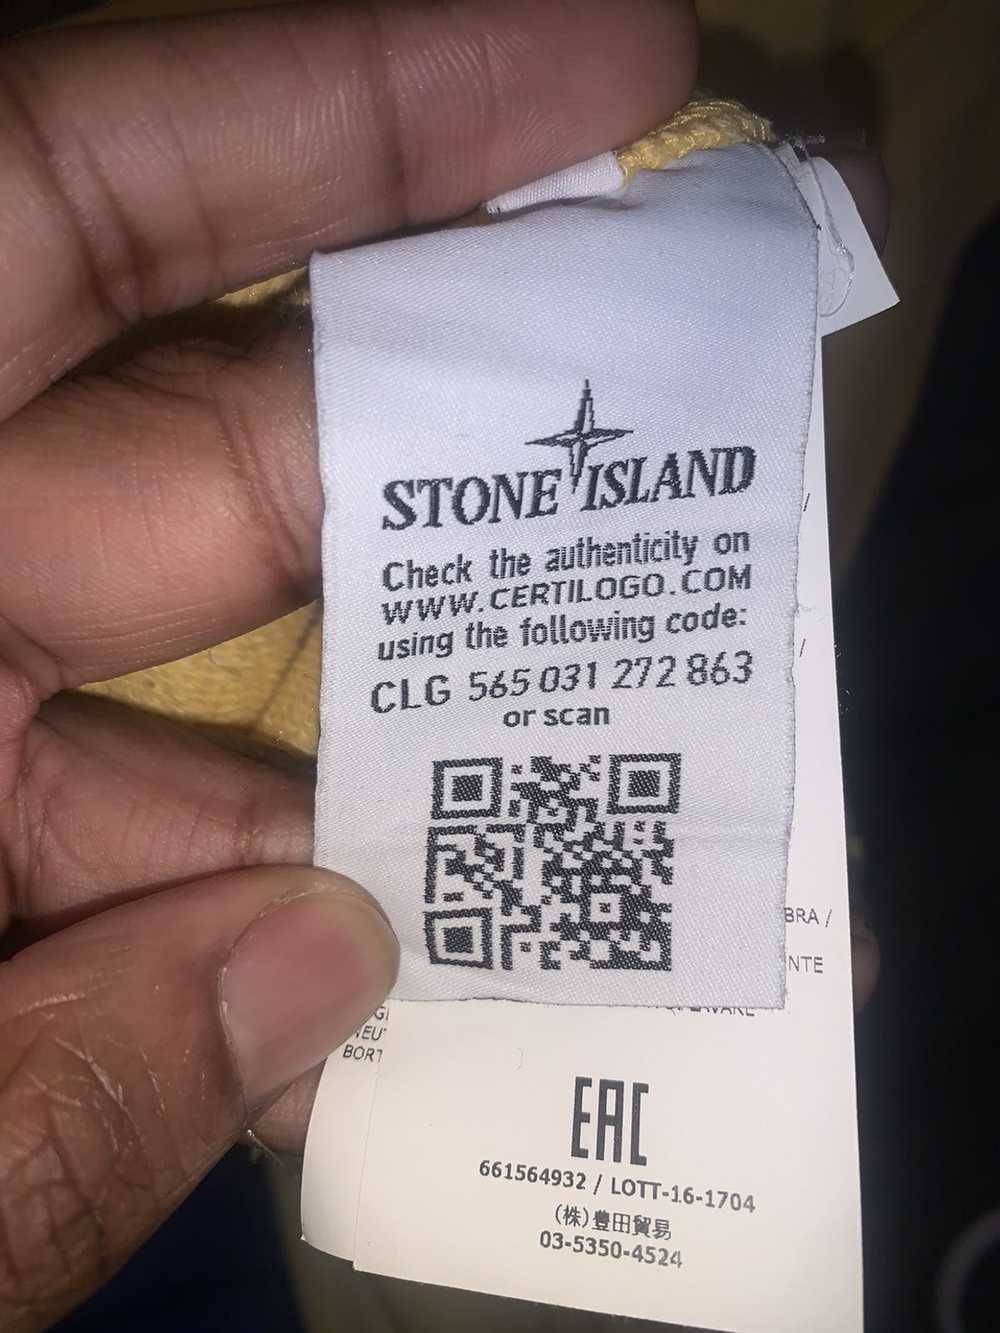 Stone Island STONE ISLAND - image 5